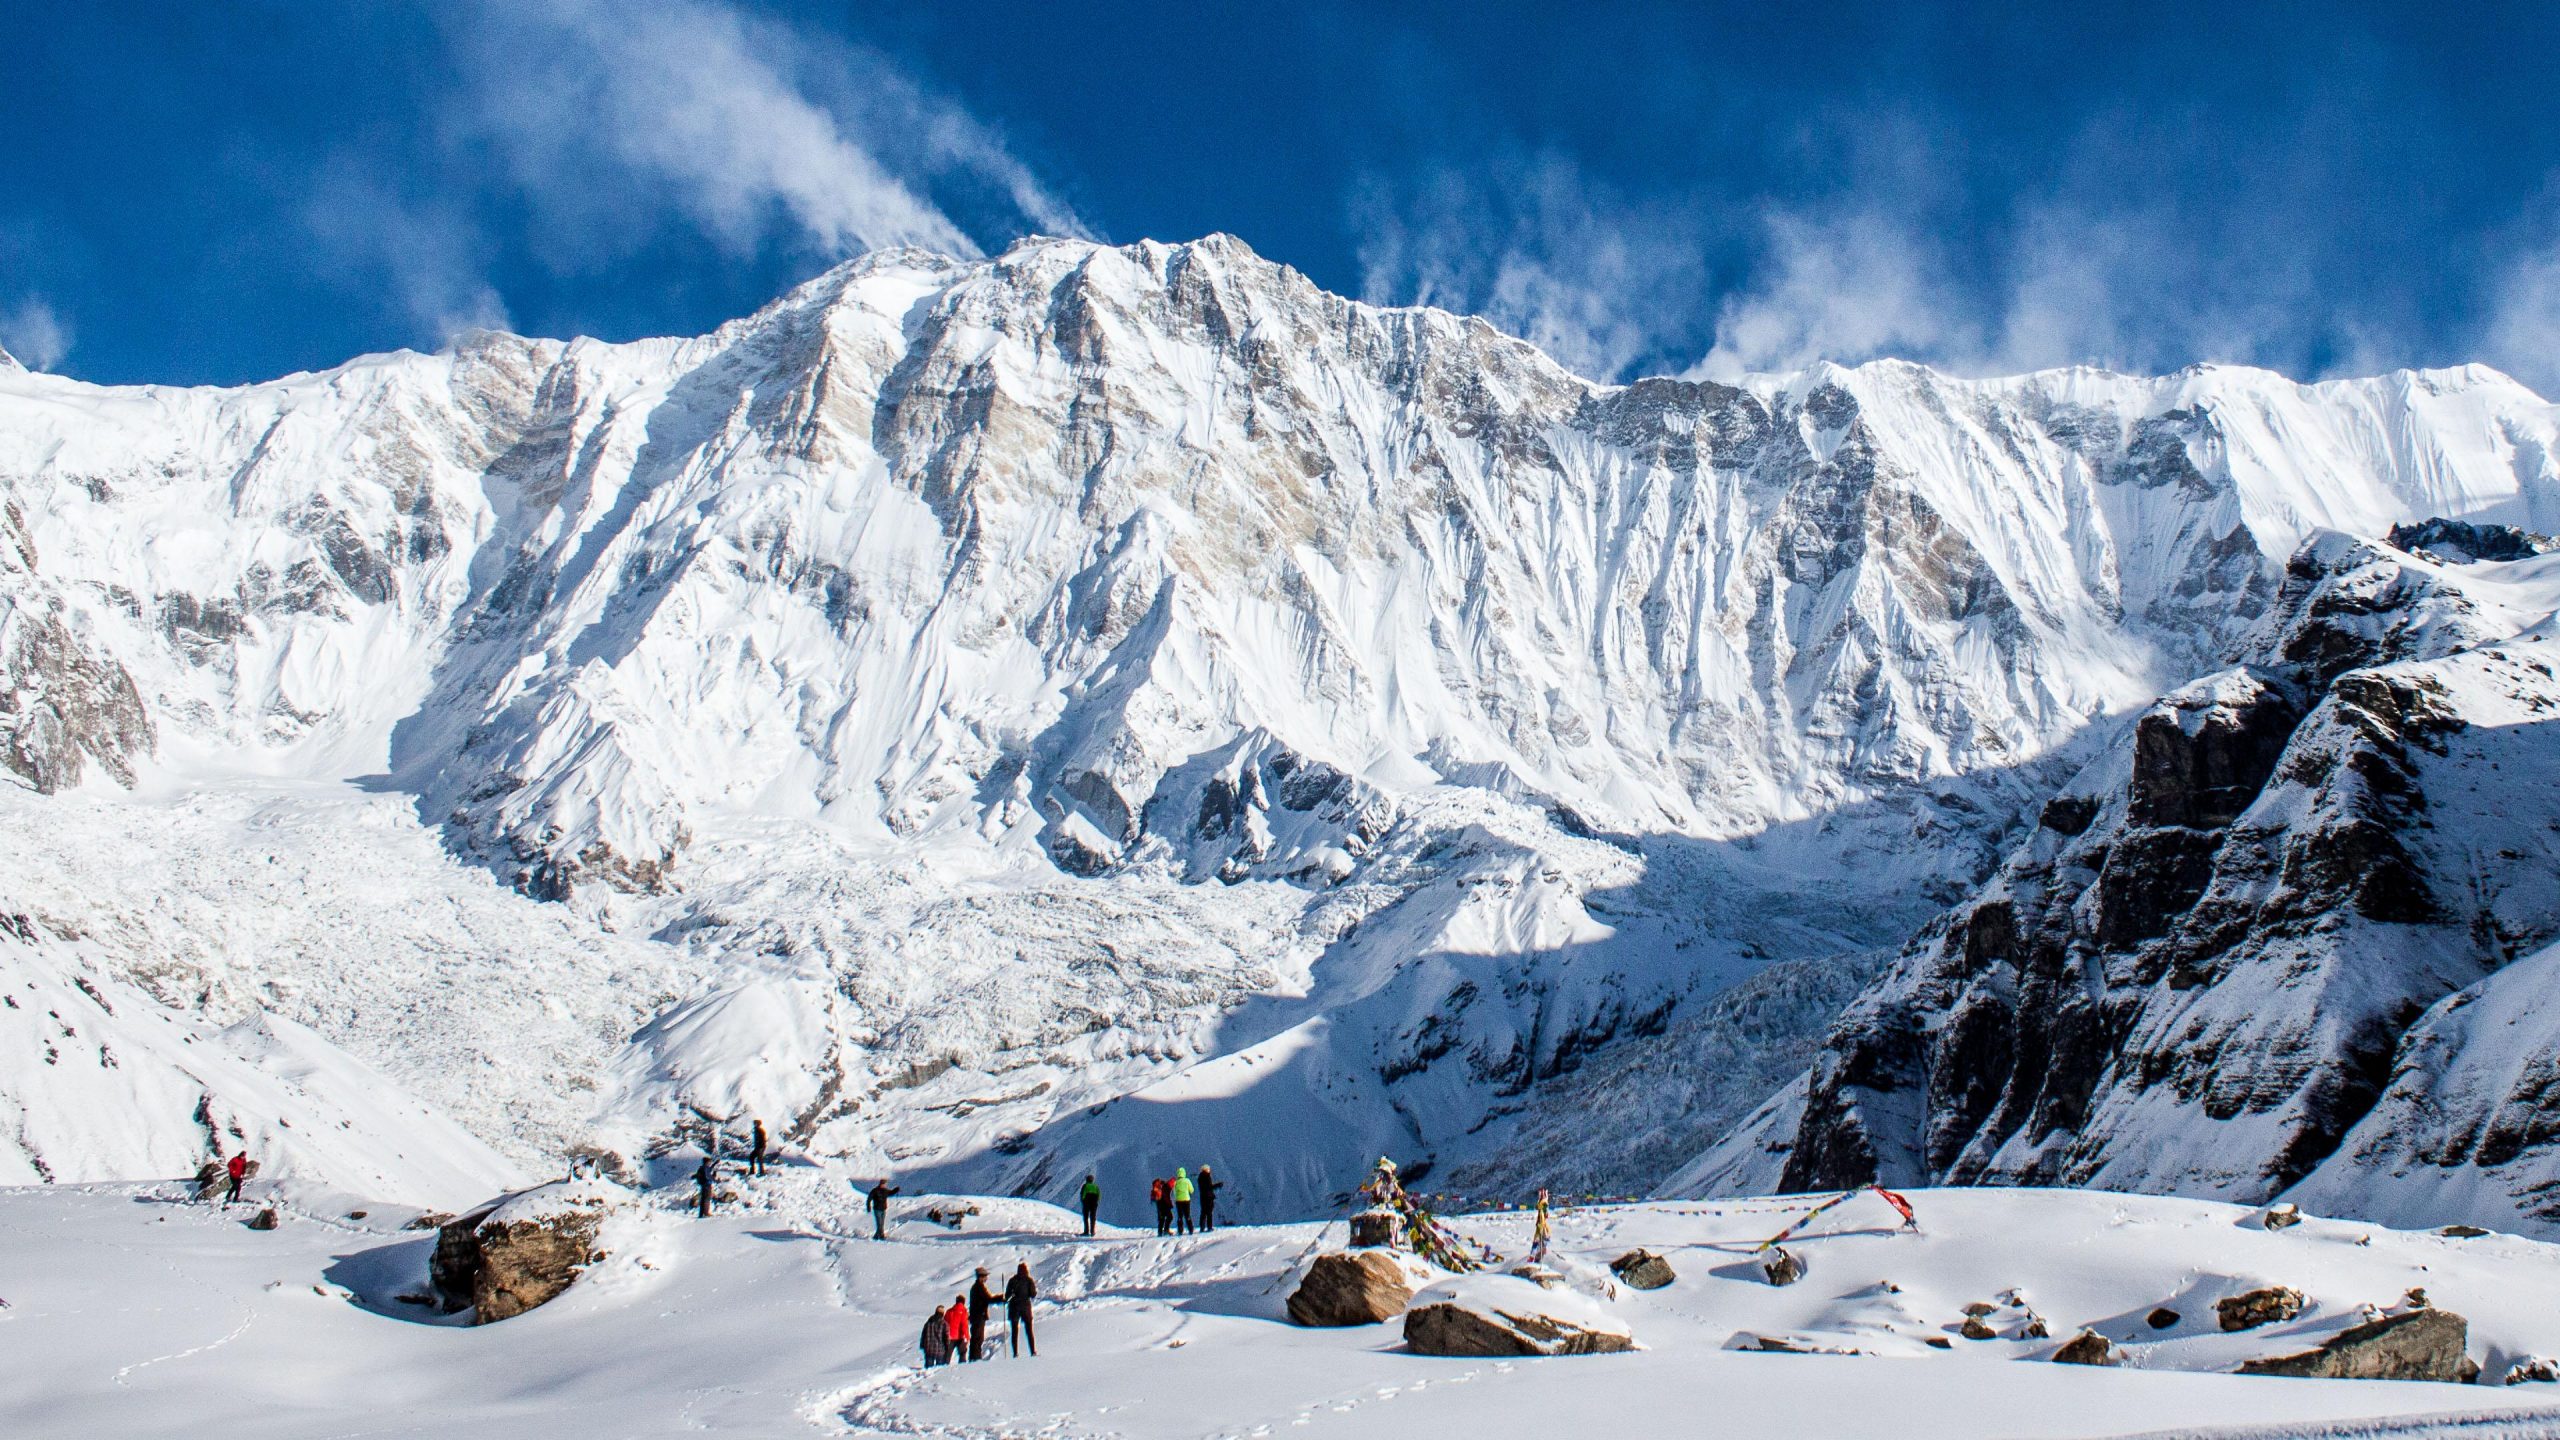 mùa đẹp nhất để lên lịch trekking nepal